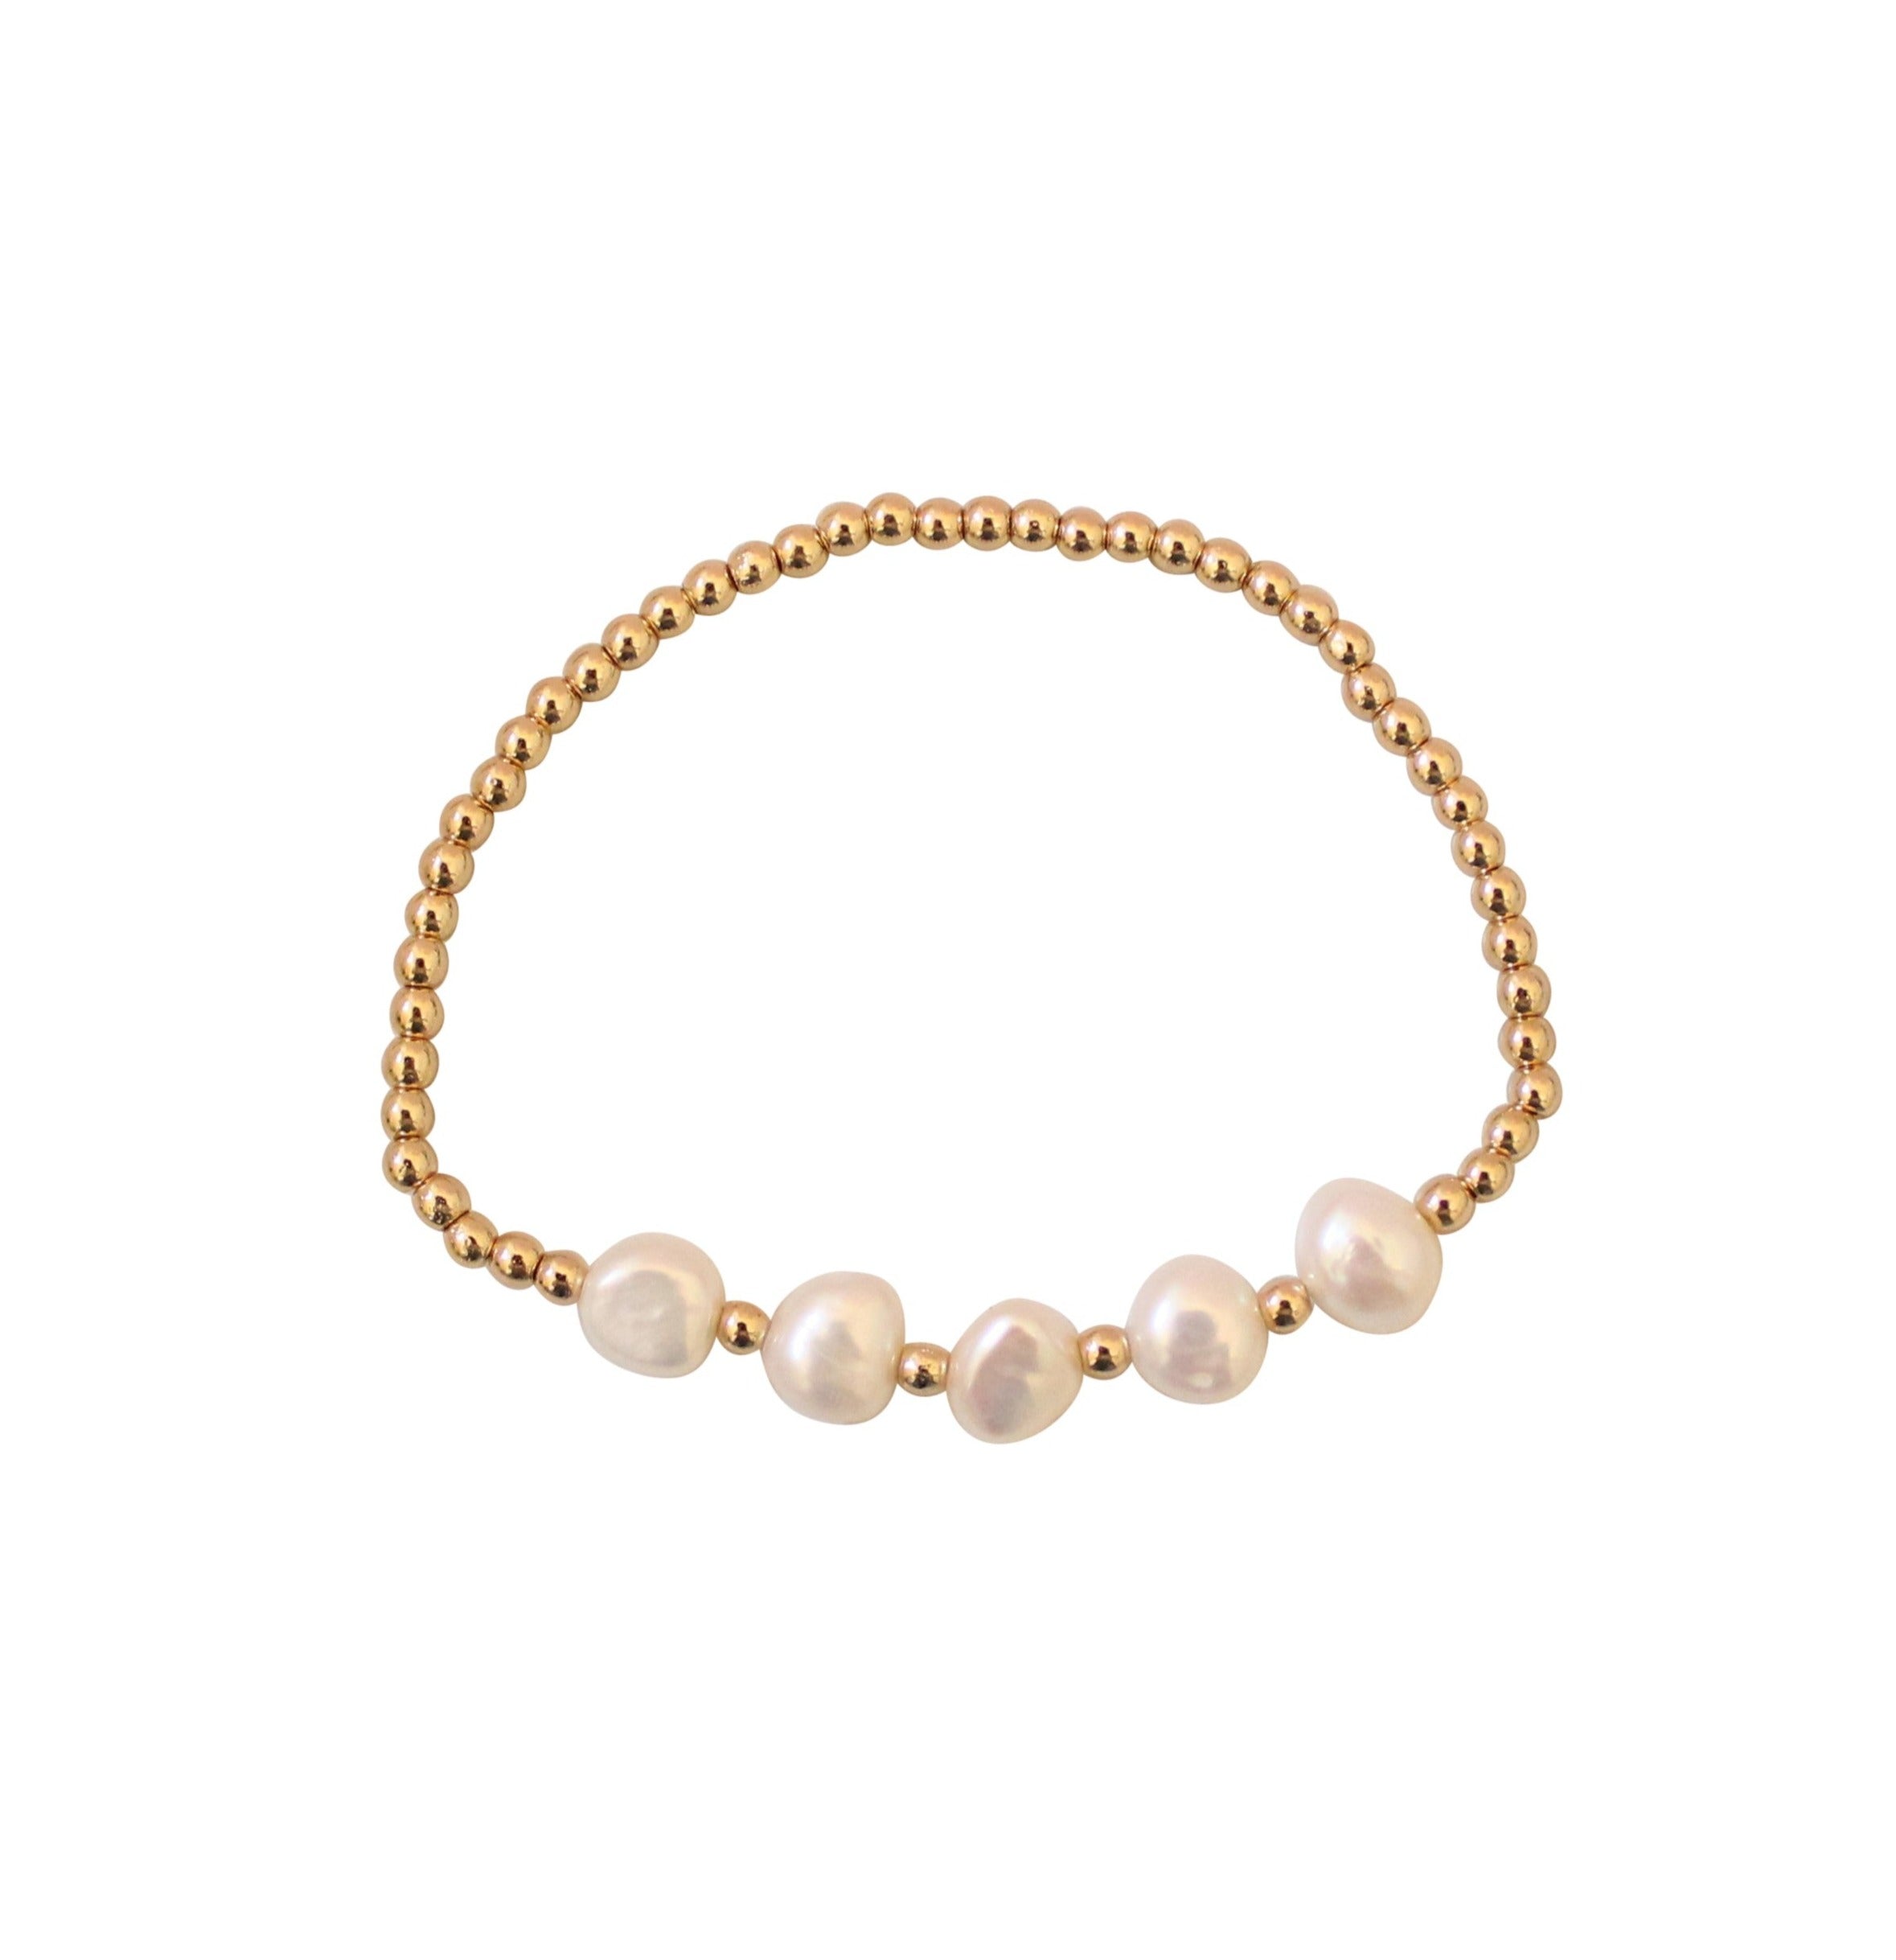 Buy 22K 916 Gold Handmade 6.5mm Elegant Pearl Bracelet Online in India -  Etsy